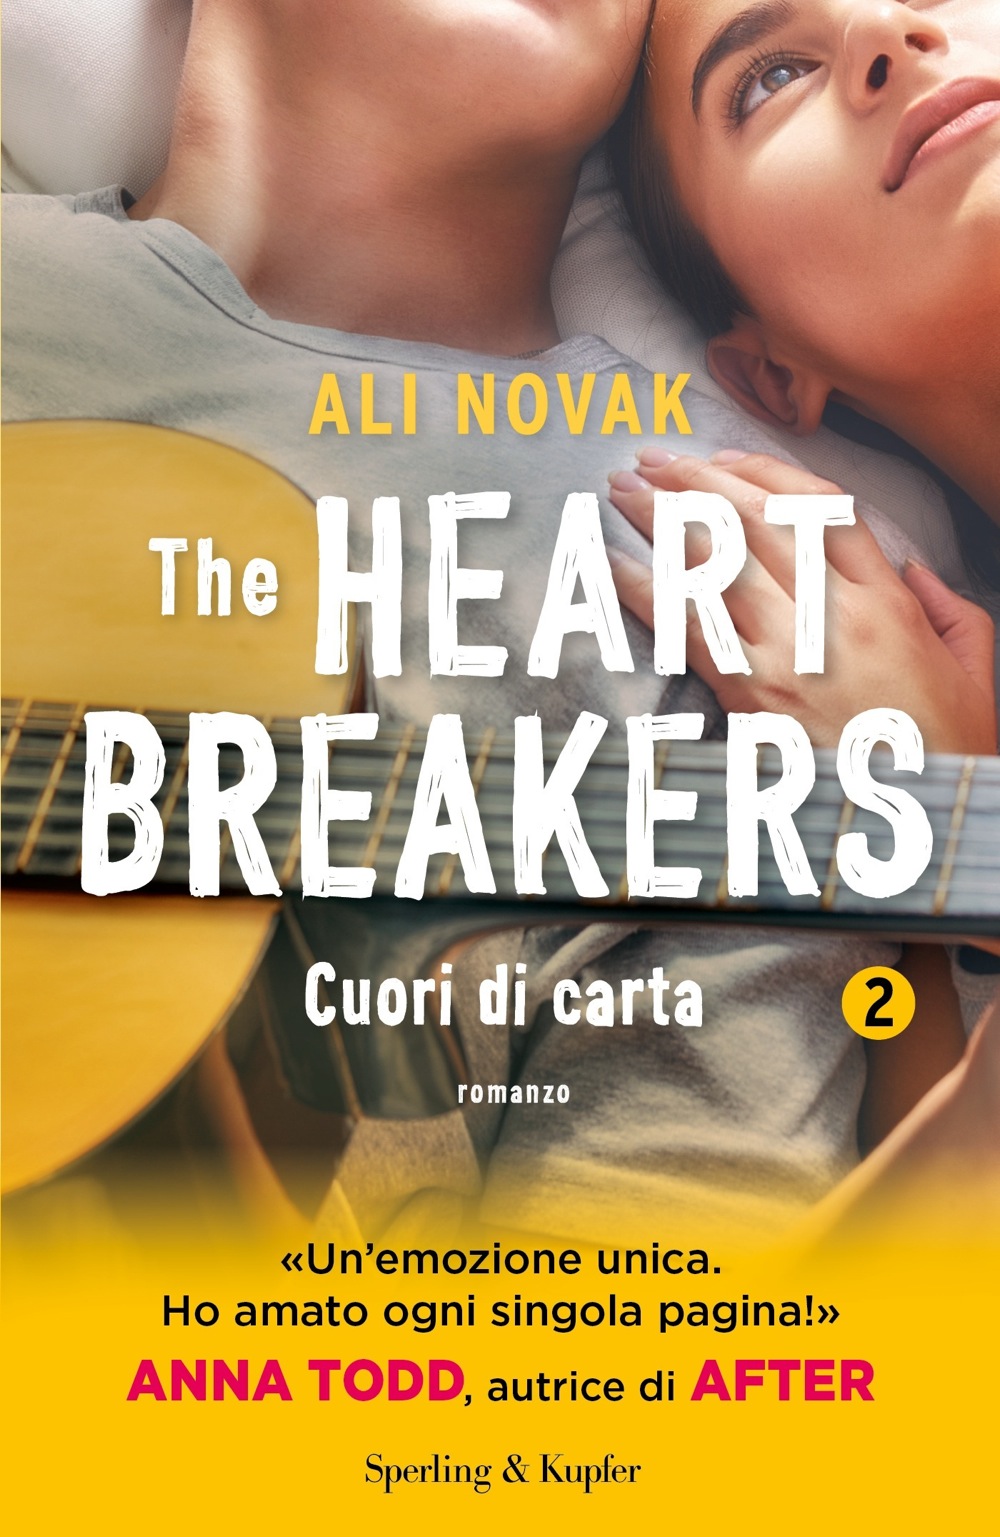 The Heartbreakers 2 cuori di carta - Sperling & Kupfer Editore